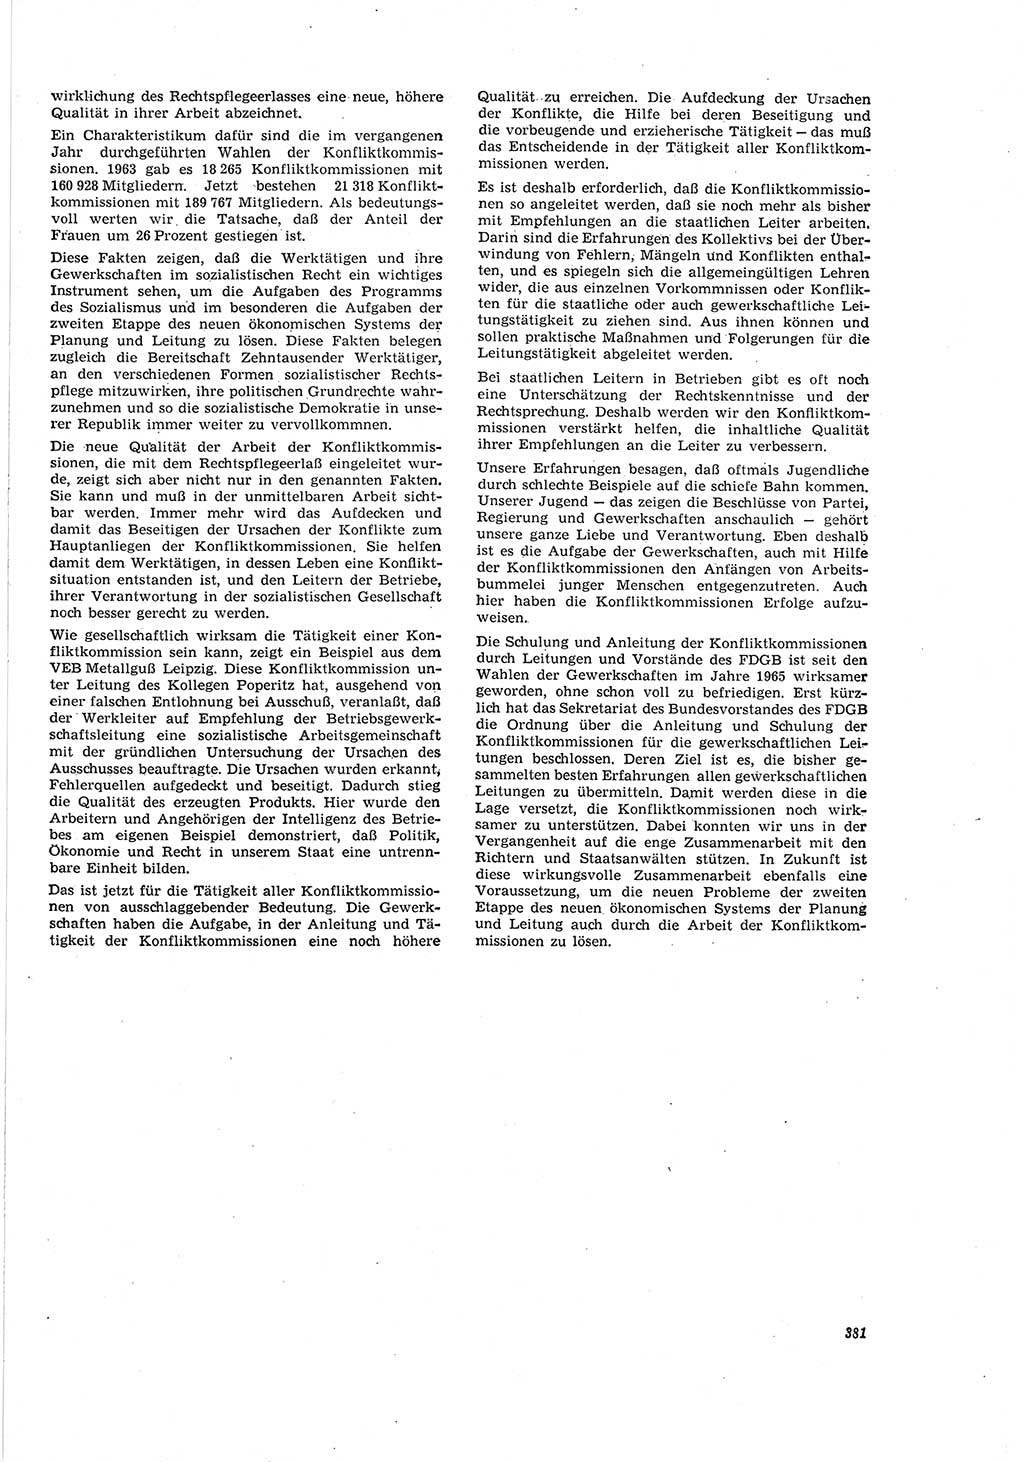 Neue Justiz (NJ), Zeitschrift für Recht und Rechtswissenschaft [Deutsche Demokratische Republik (DDR)], 20. Jahrgang 1966, Seite 381 (NJ DDR 1966, S. 381)